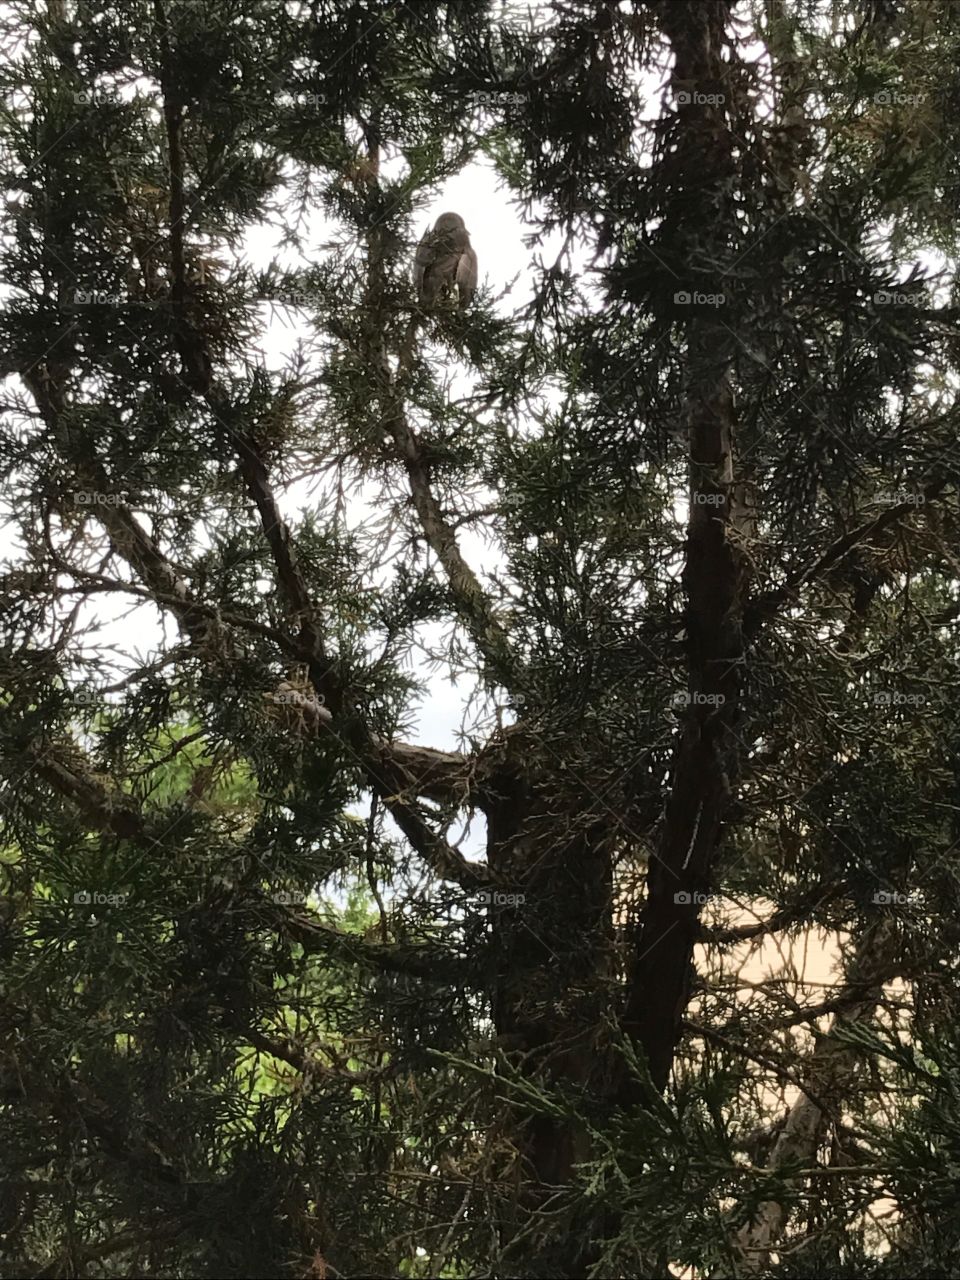 The bird on the tree 